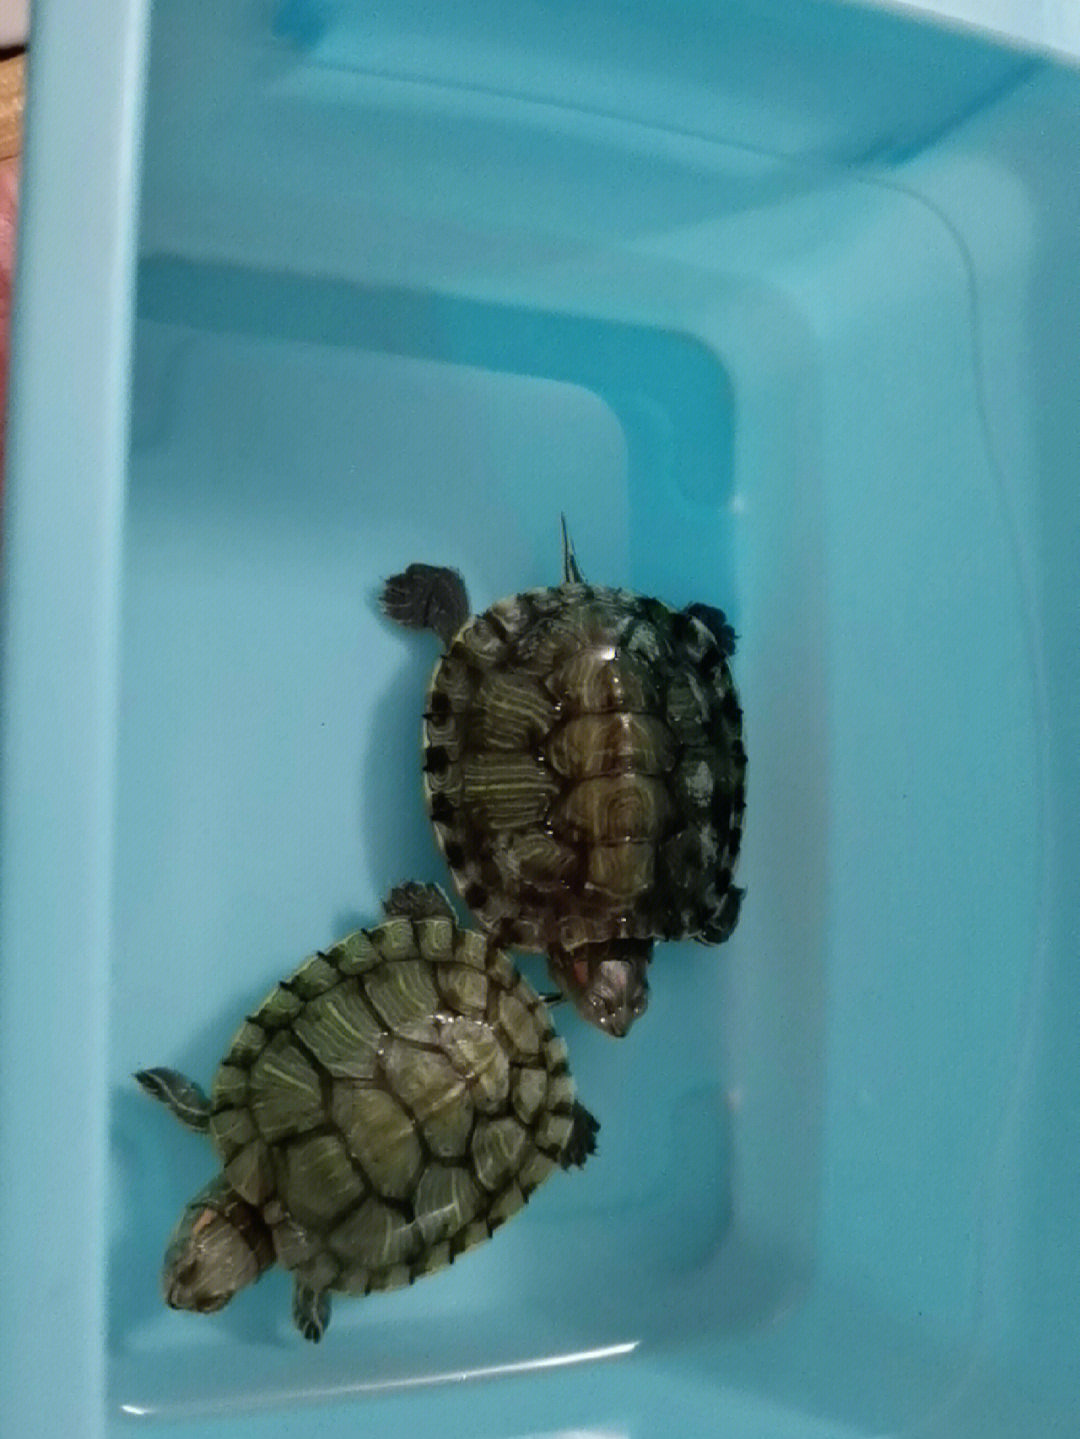 我好怕冬眠着乌龟死了我都不知道两个巴西龟第一次冬眠,本来是用土